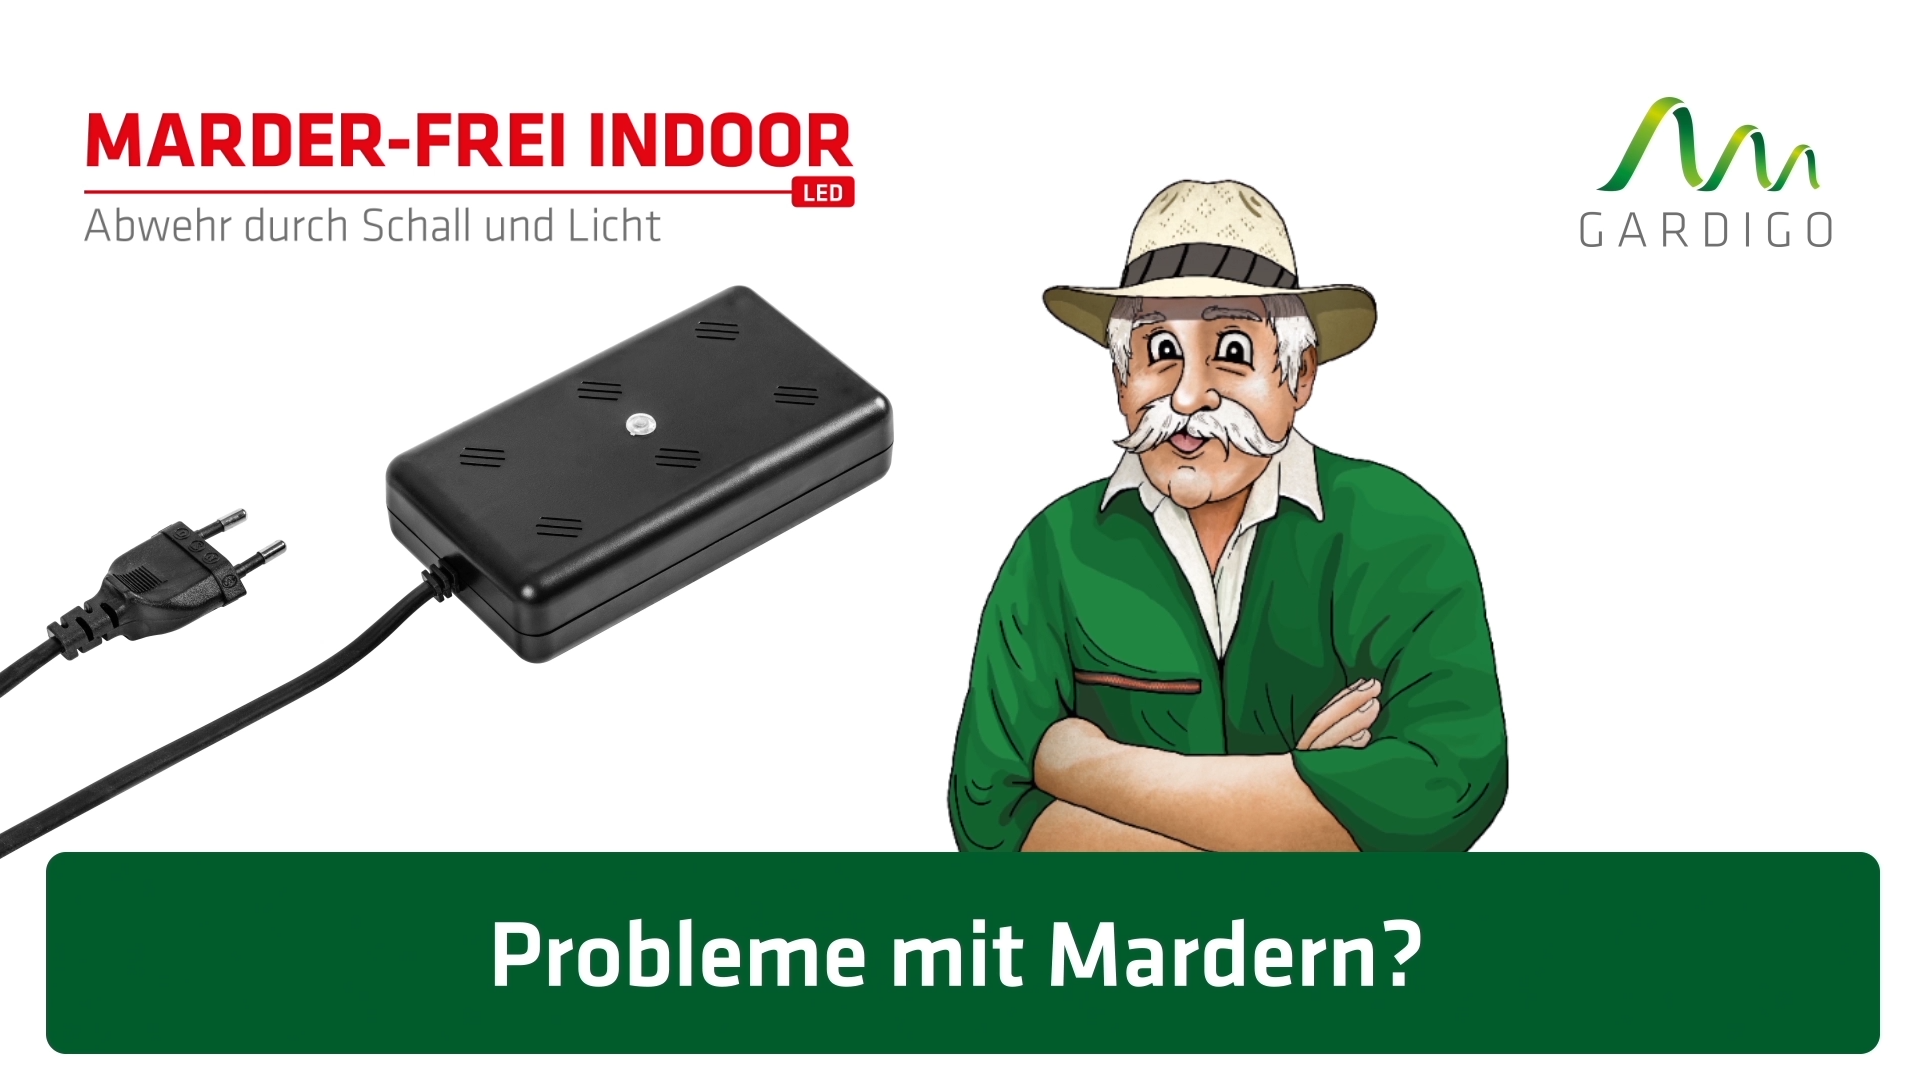 MARDERFREI Erfolgreich - MARDERFREI GmbH Marderabwehr Marderschutz